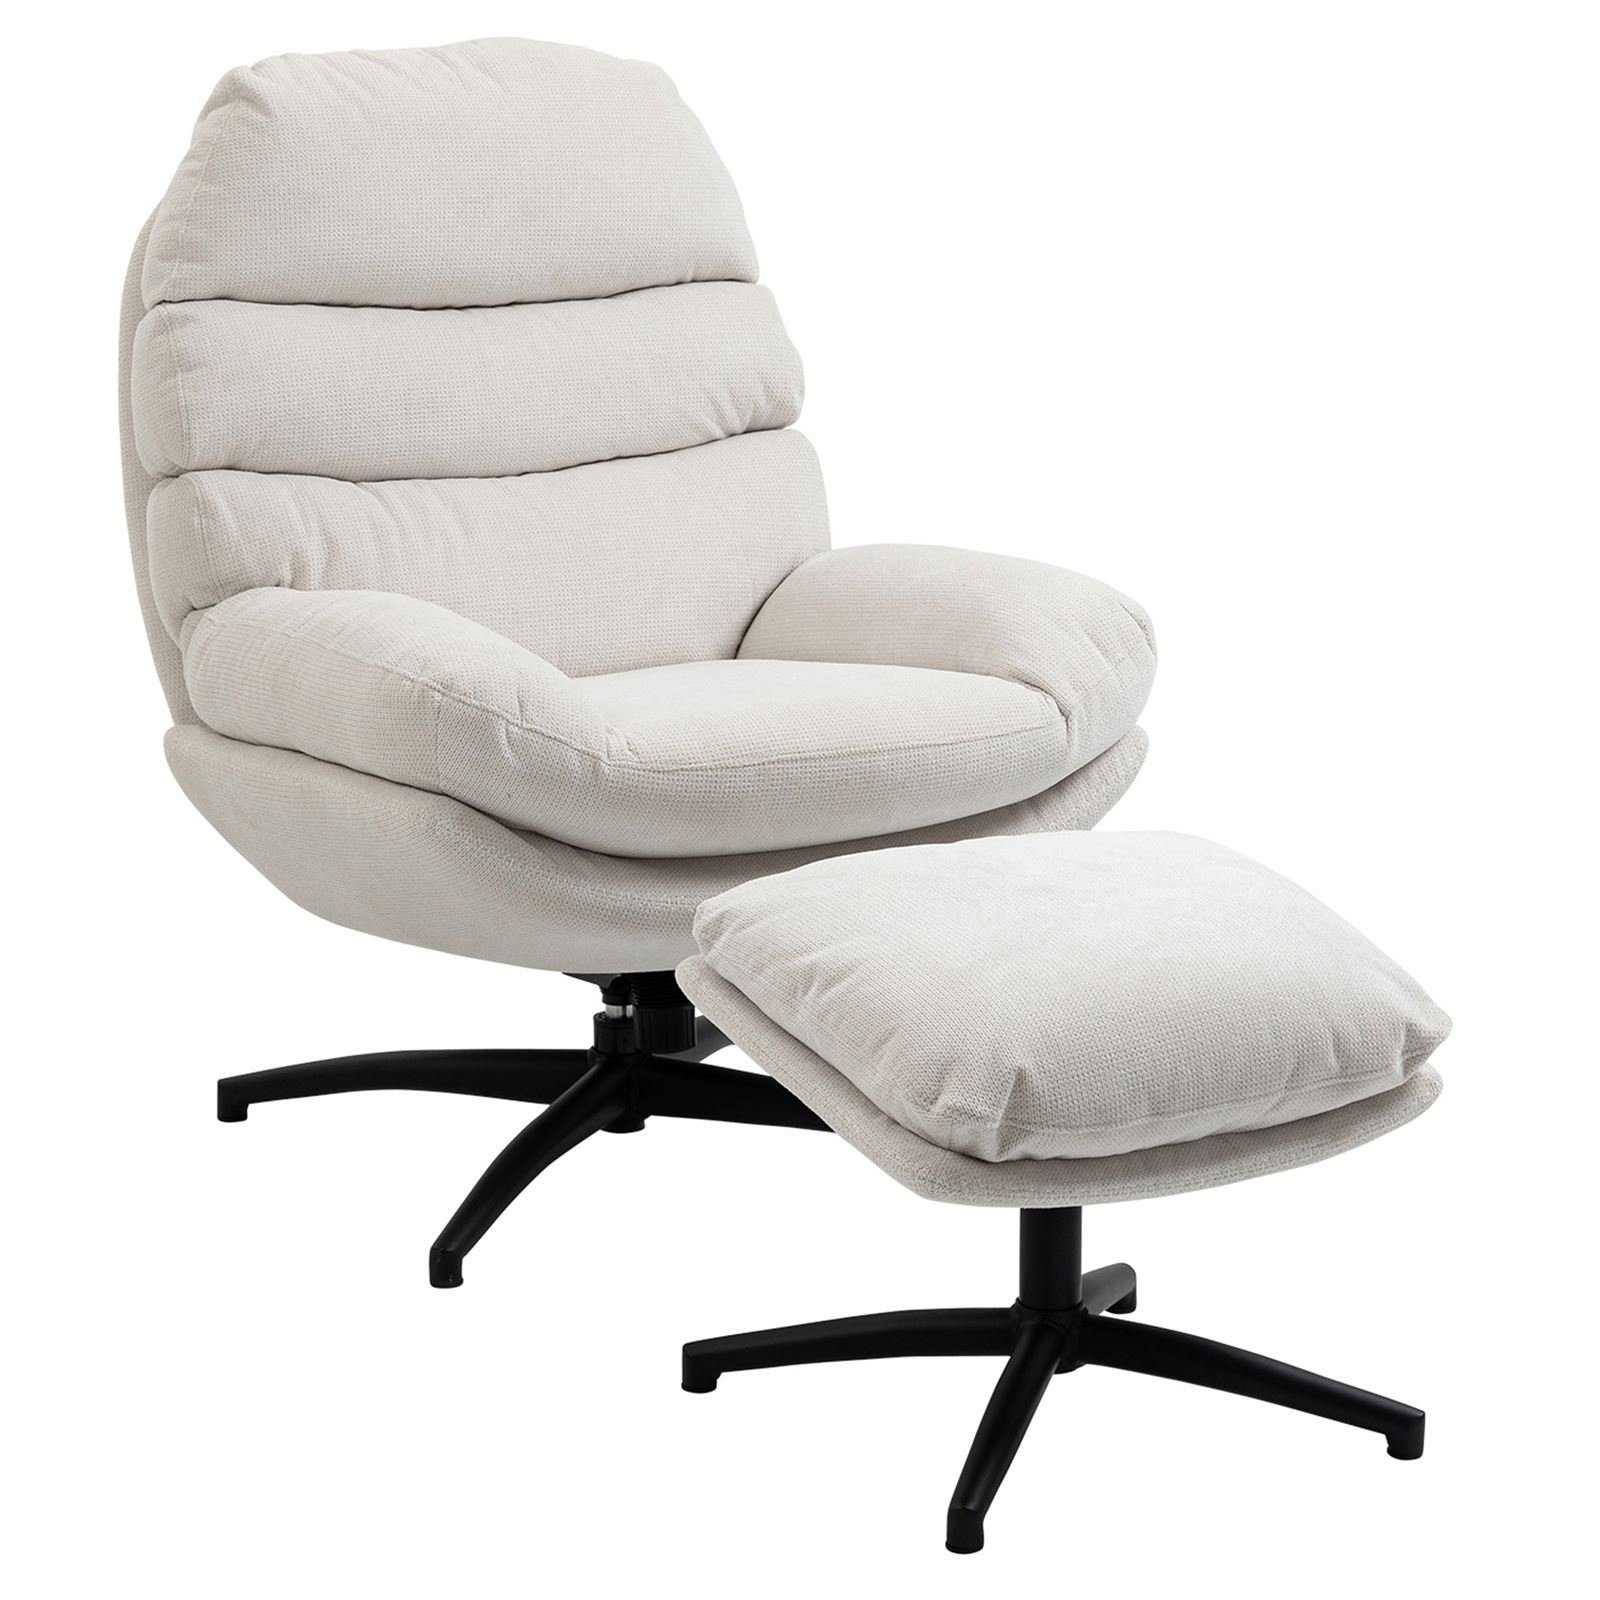 CARO-Möbel Relaxsessel, Relaxsessel mit Hocker Polstersessel Wohnzimmer Metall Stoff Modern beige